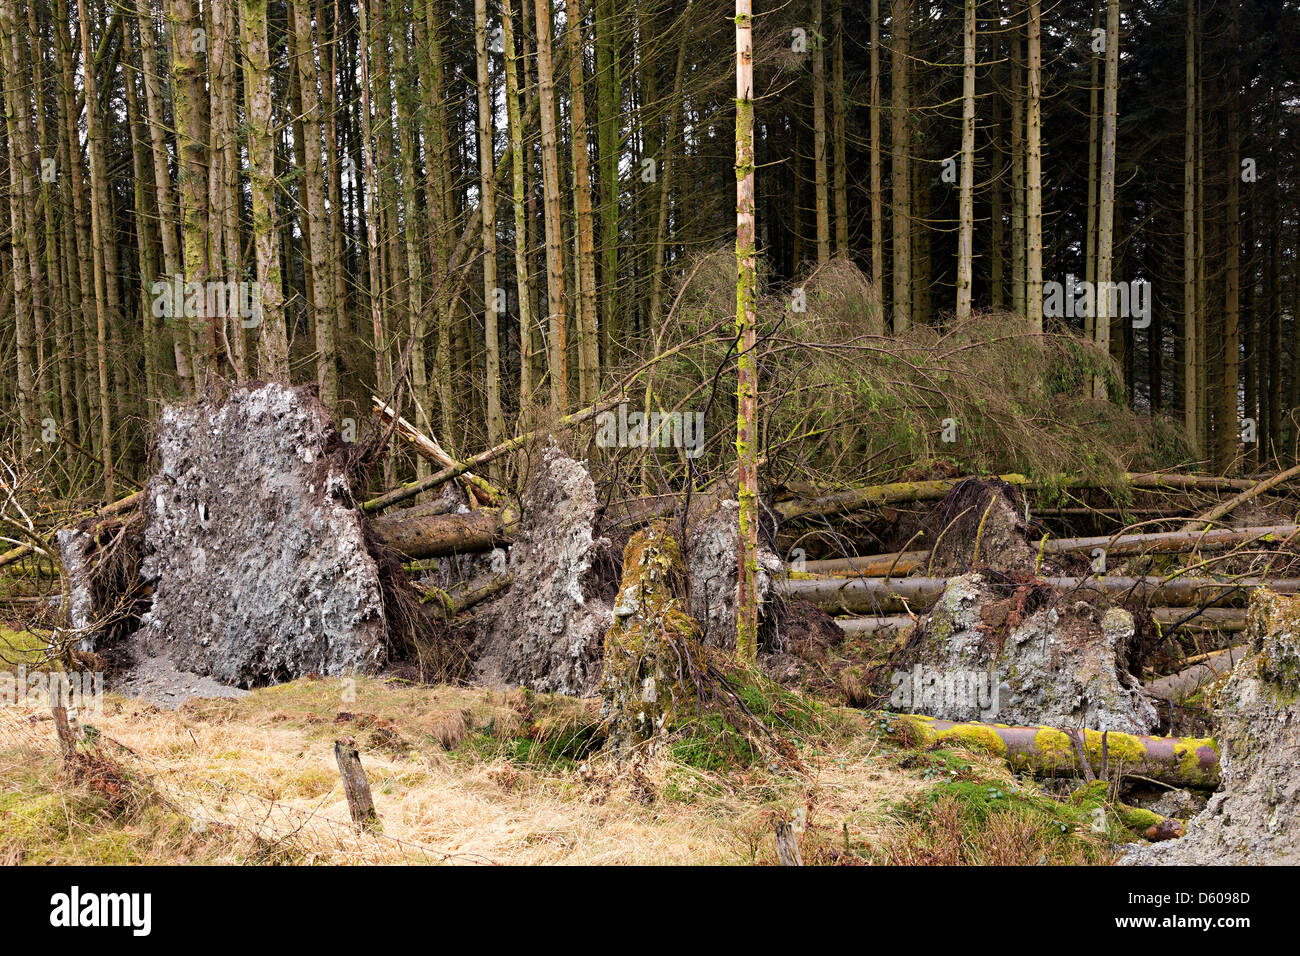 Arrancaron árboles caídos en el borde del bosque, Wales, REINO UNIDO Foto de stock